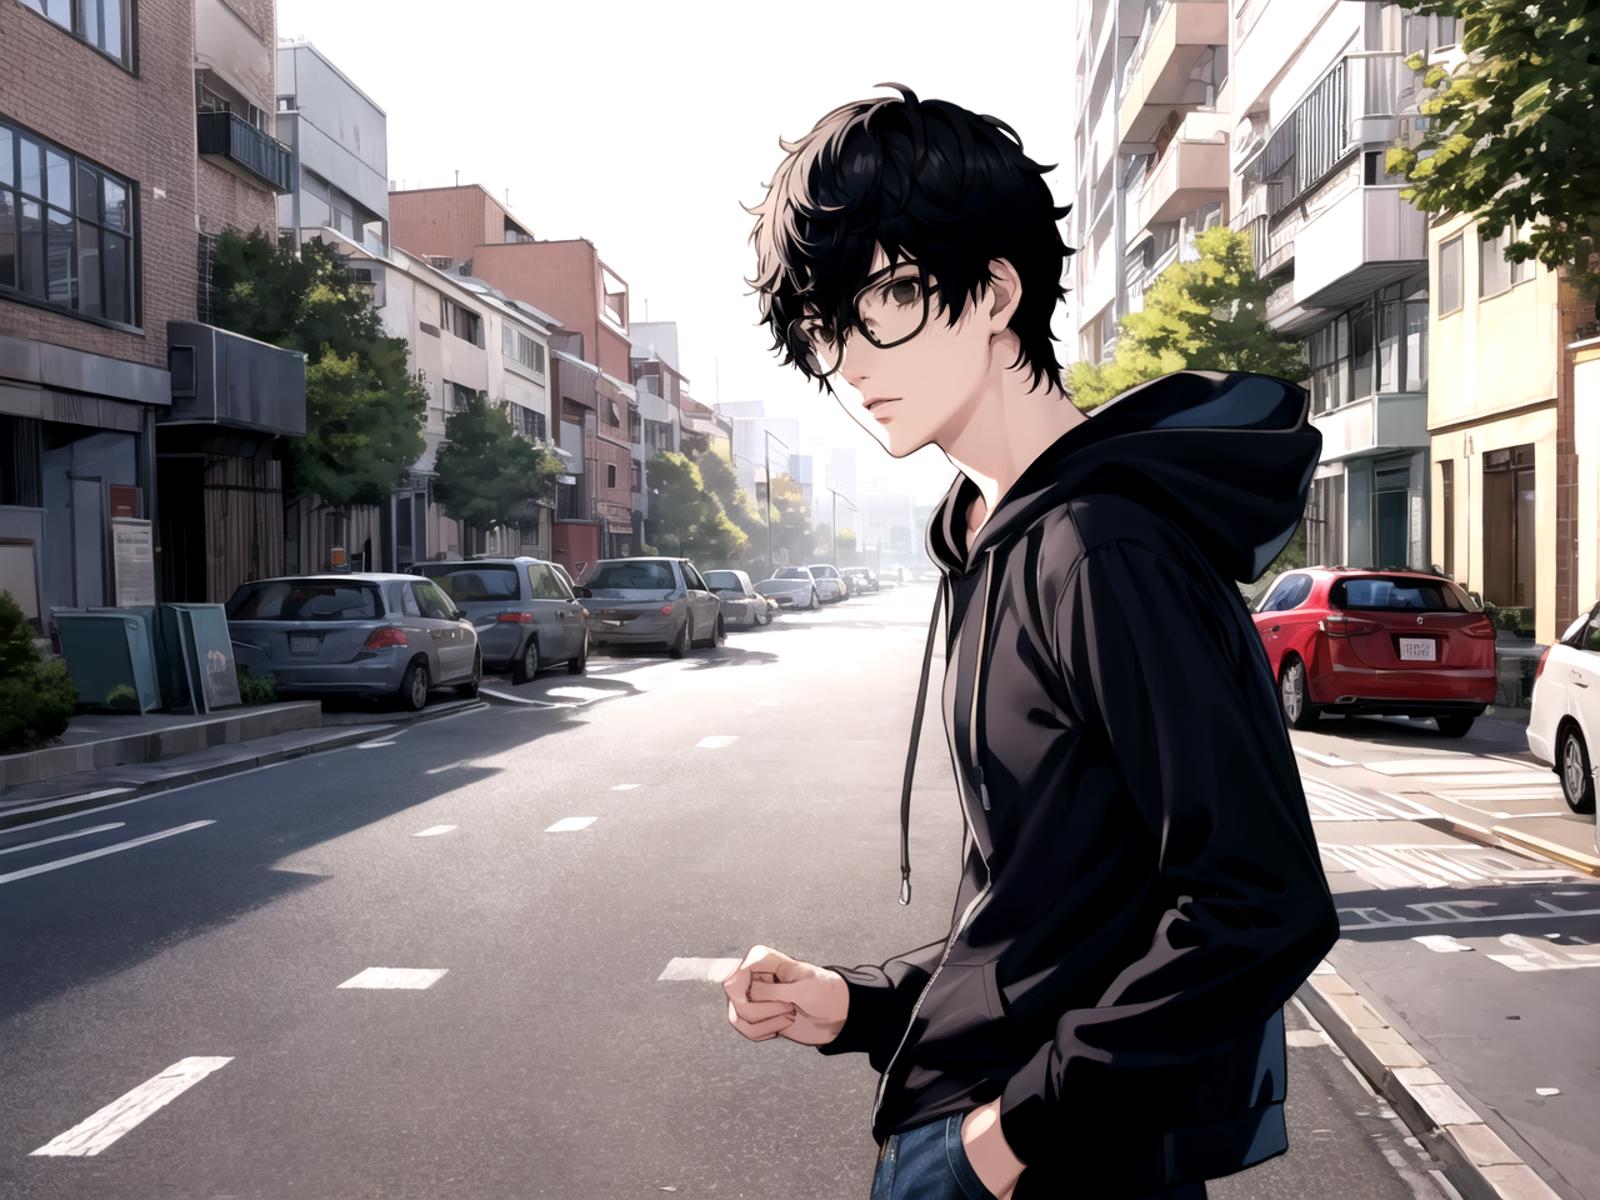 Ren Amamiya (Joker) - Persona 5 image by DocShotgun